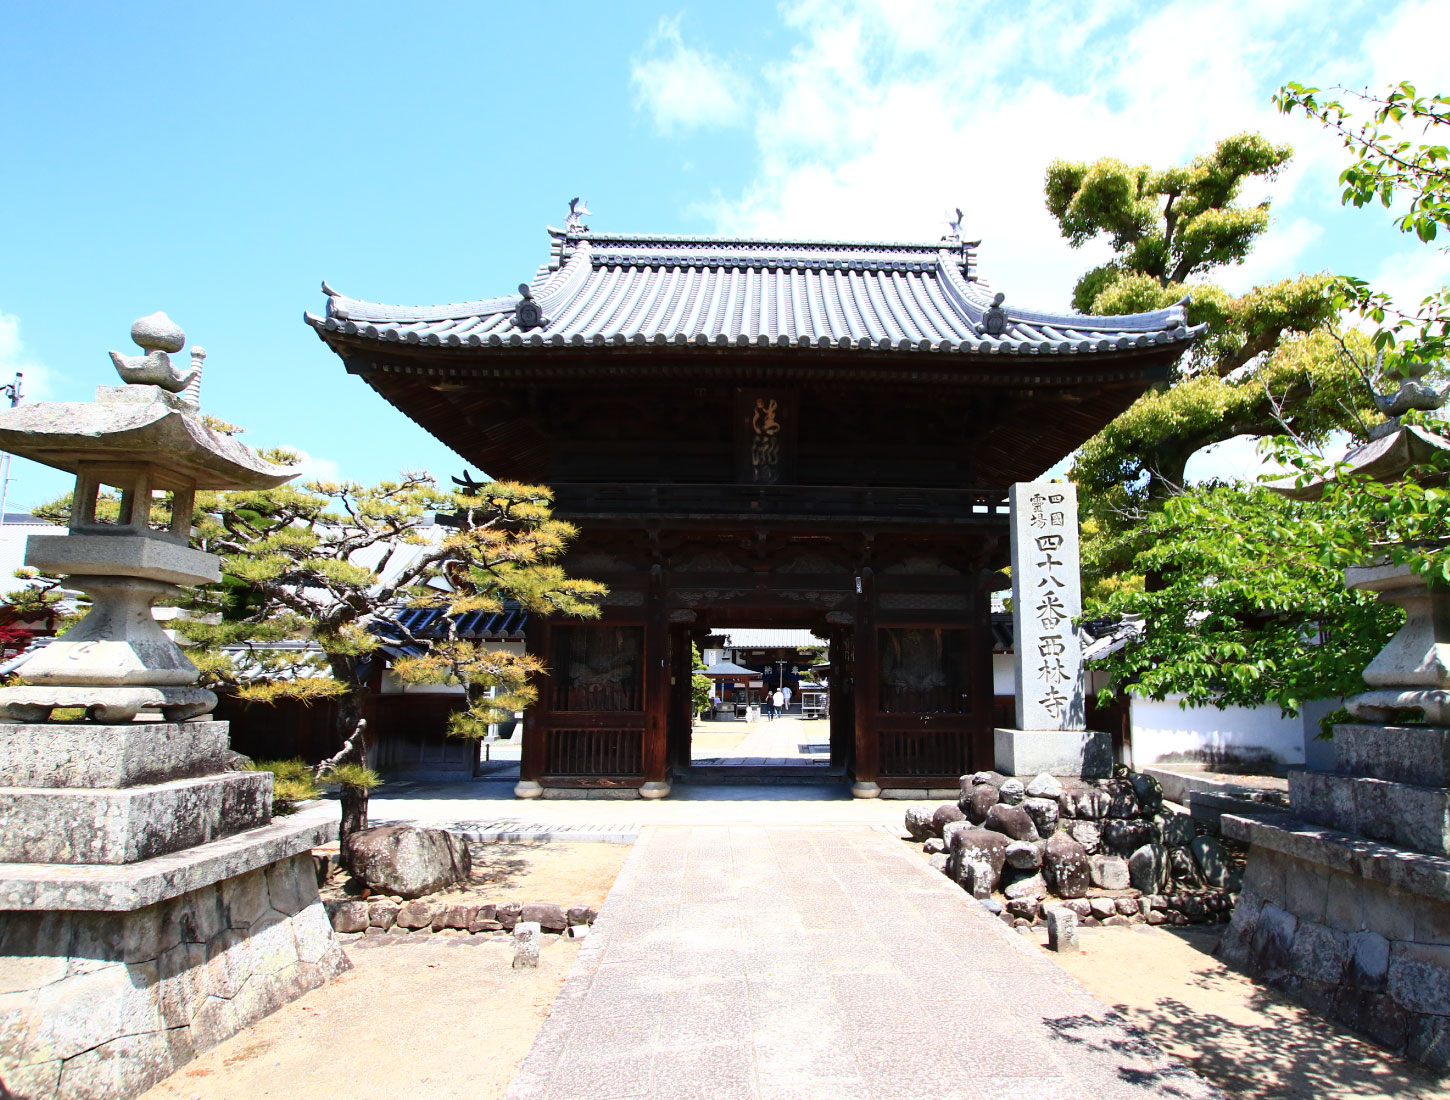 Kiyotakiyama Anyangin Sarinji Temple